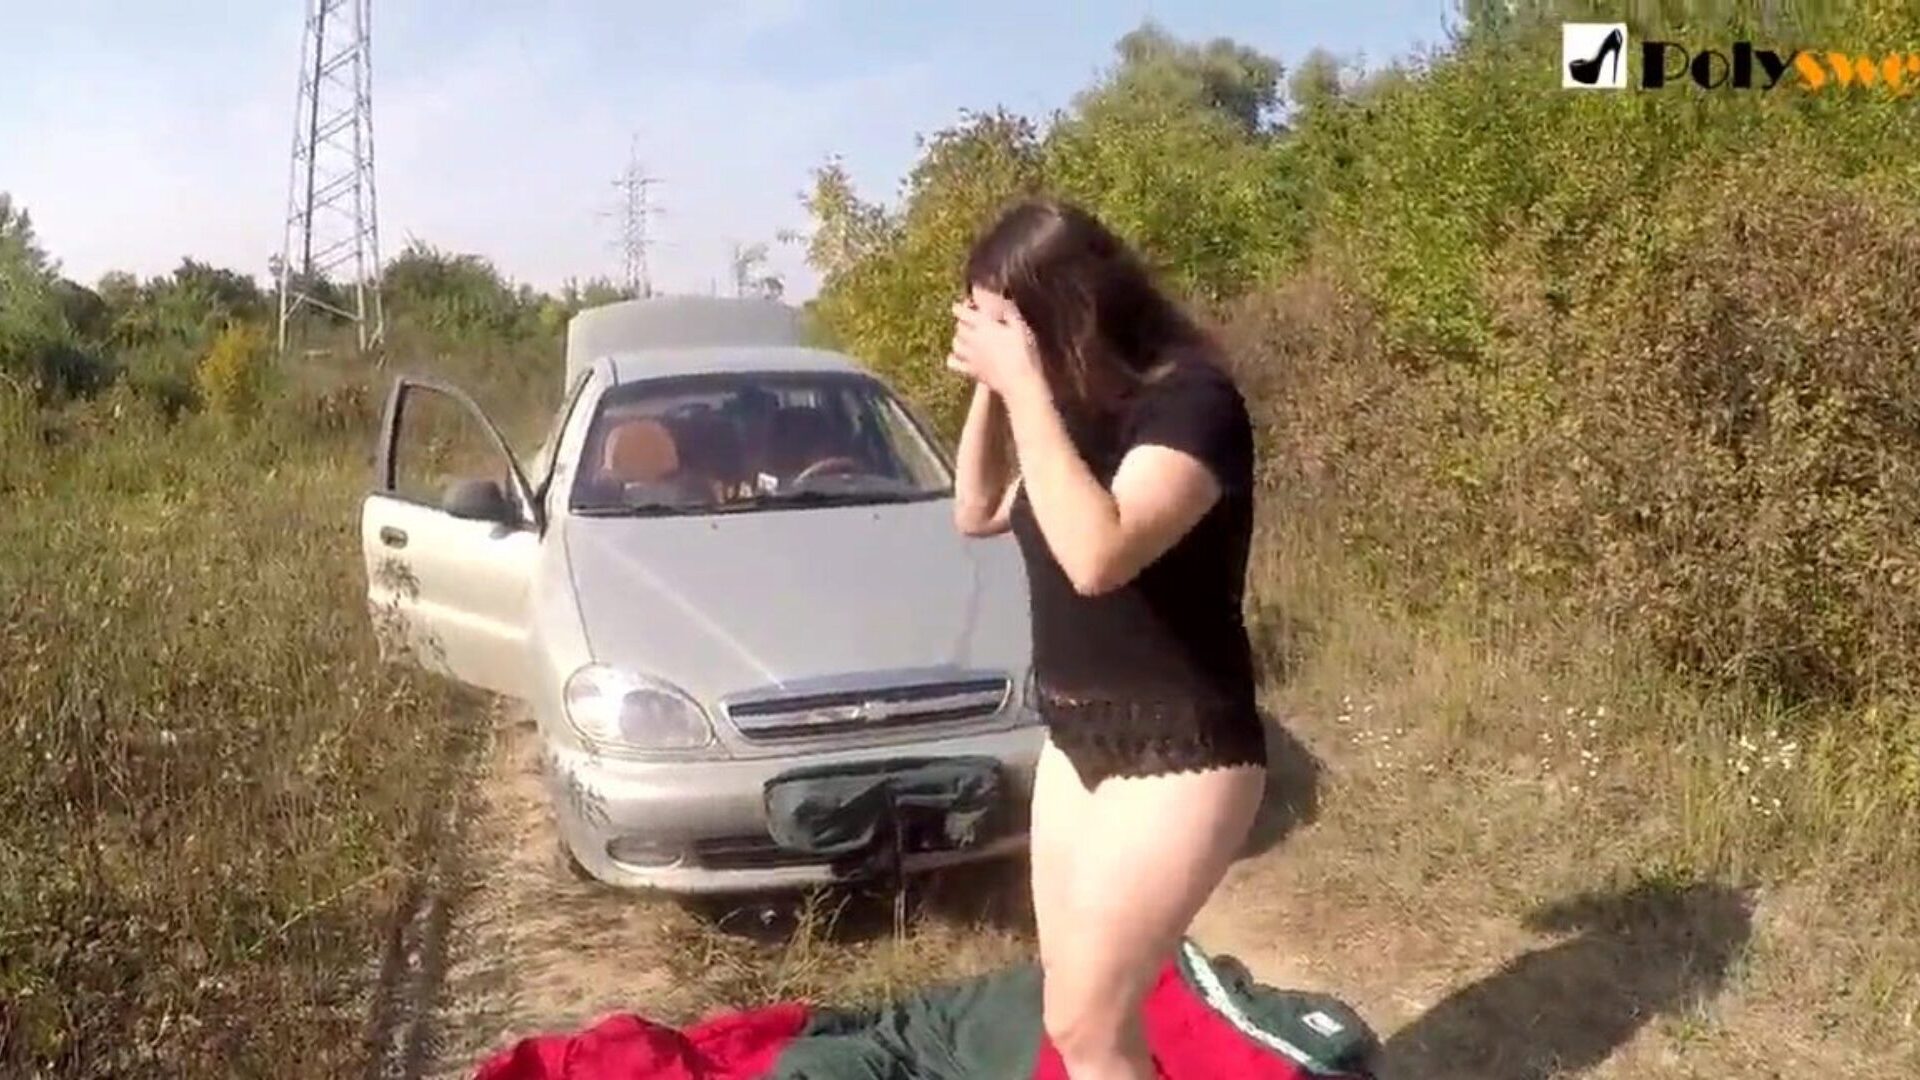 ragazza della masturbazione pubblica sono stato catturato da un'auto all'inizio del video)